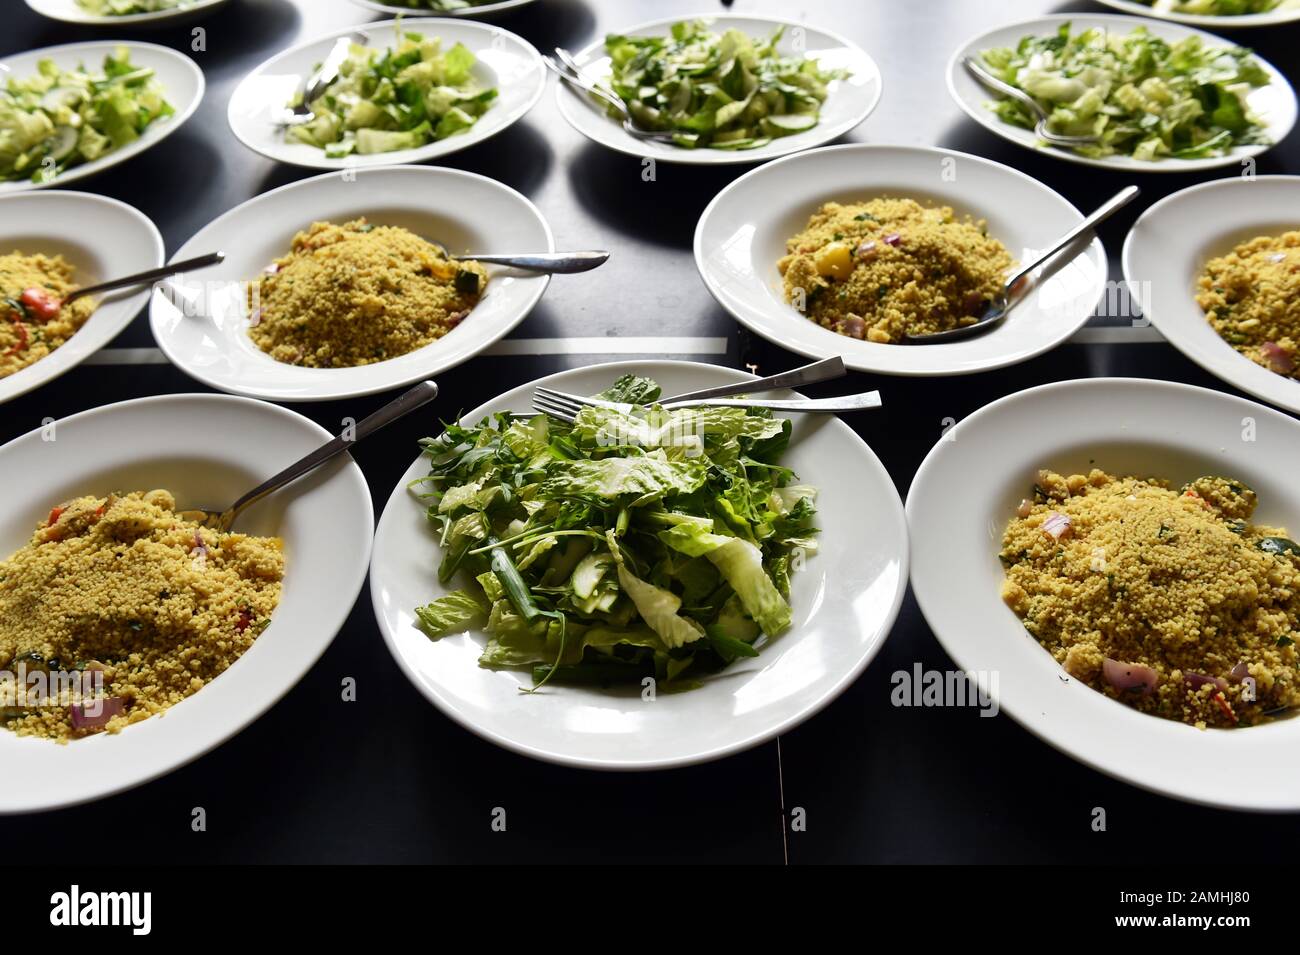 La nourriture de réception de mariage est préparée pour la table, couscous et salade dans de grands bols pour le partage. Banque D'Images